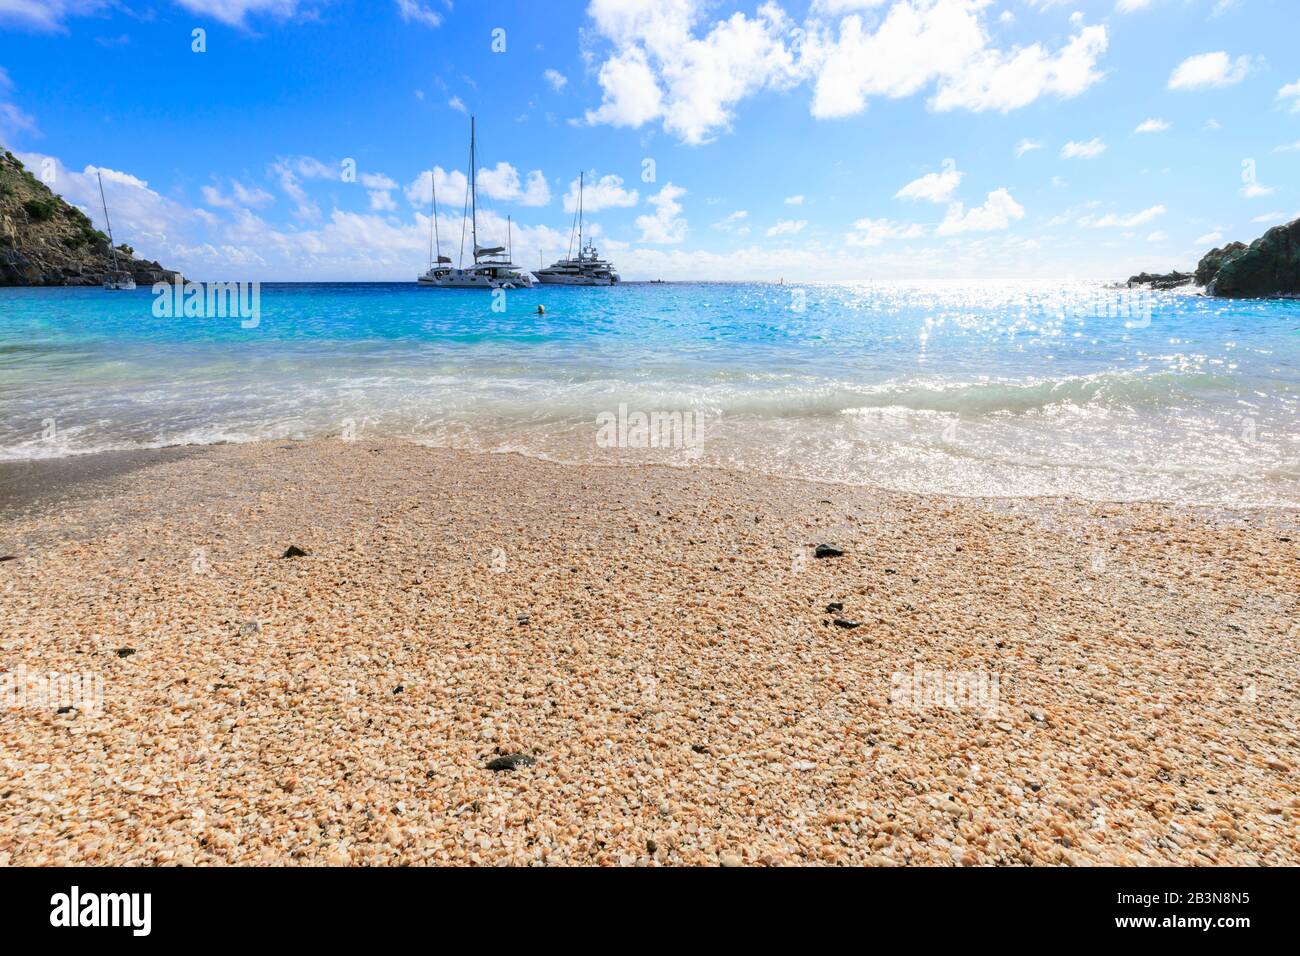 Shell Beach, Jachten in türkisfarbener Bucht, Gustavia, St. Barthelemy (St. Barts) (St. Barth), Westindien, Karibik, Mittelamerika Stockfoto